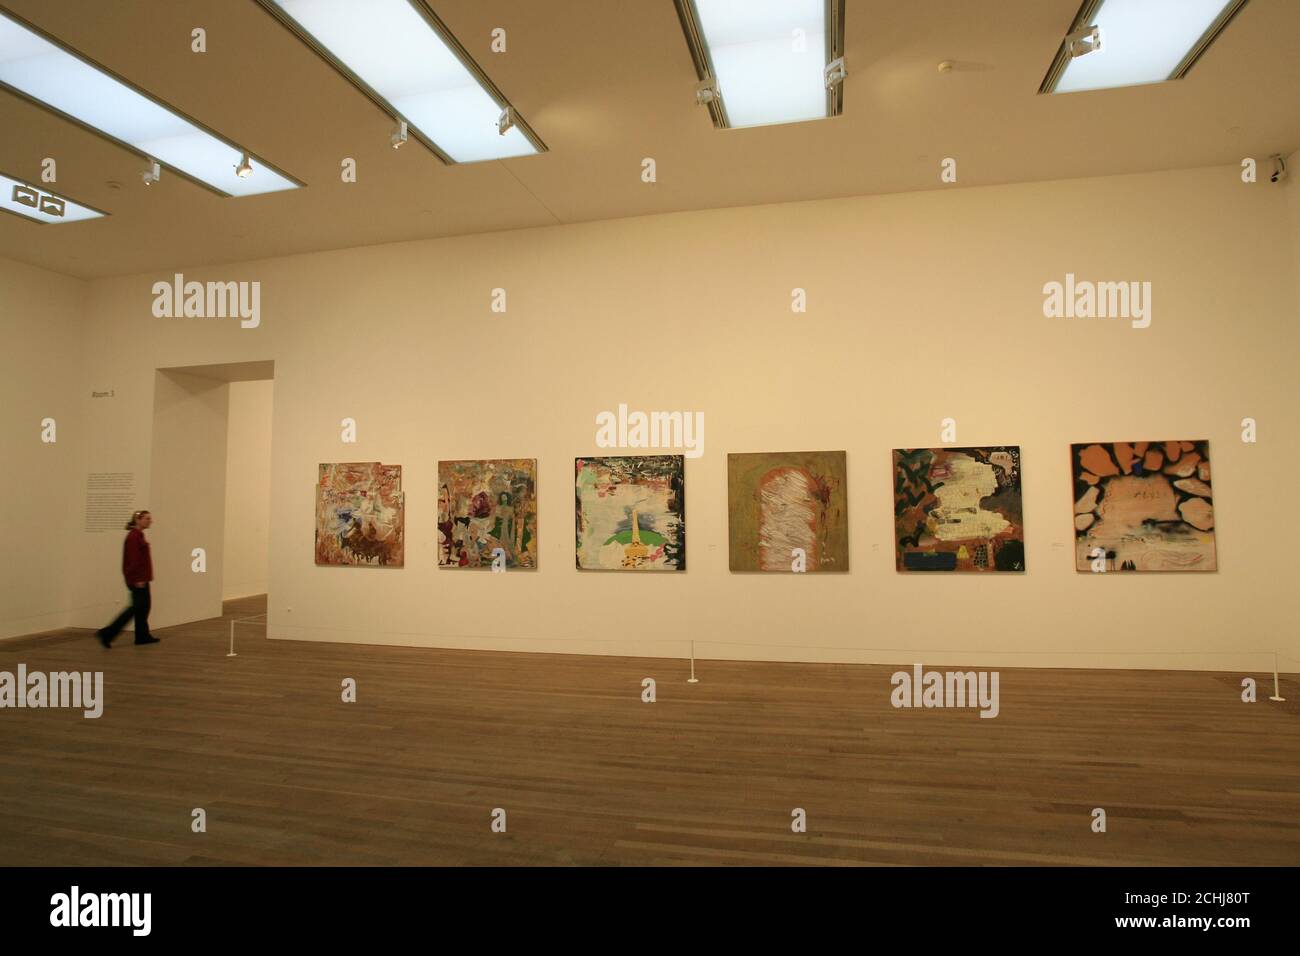 Die Bilder von per Kirkeby werden in der Tate Modern in London als Teil der ersten großen Studie des dänischen Künstlers in Großbritannien vorgestellt. Stockfoto